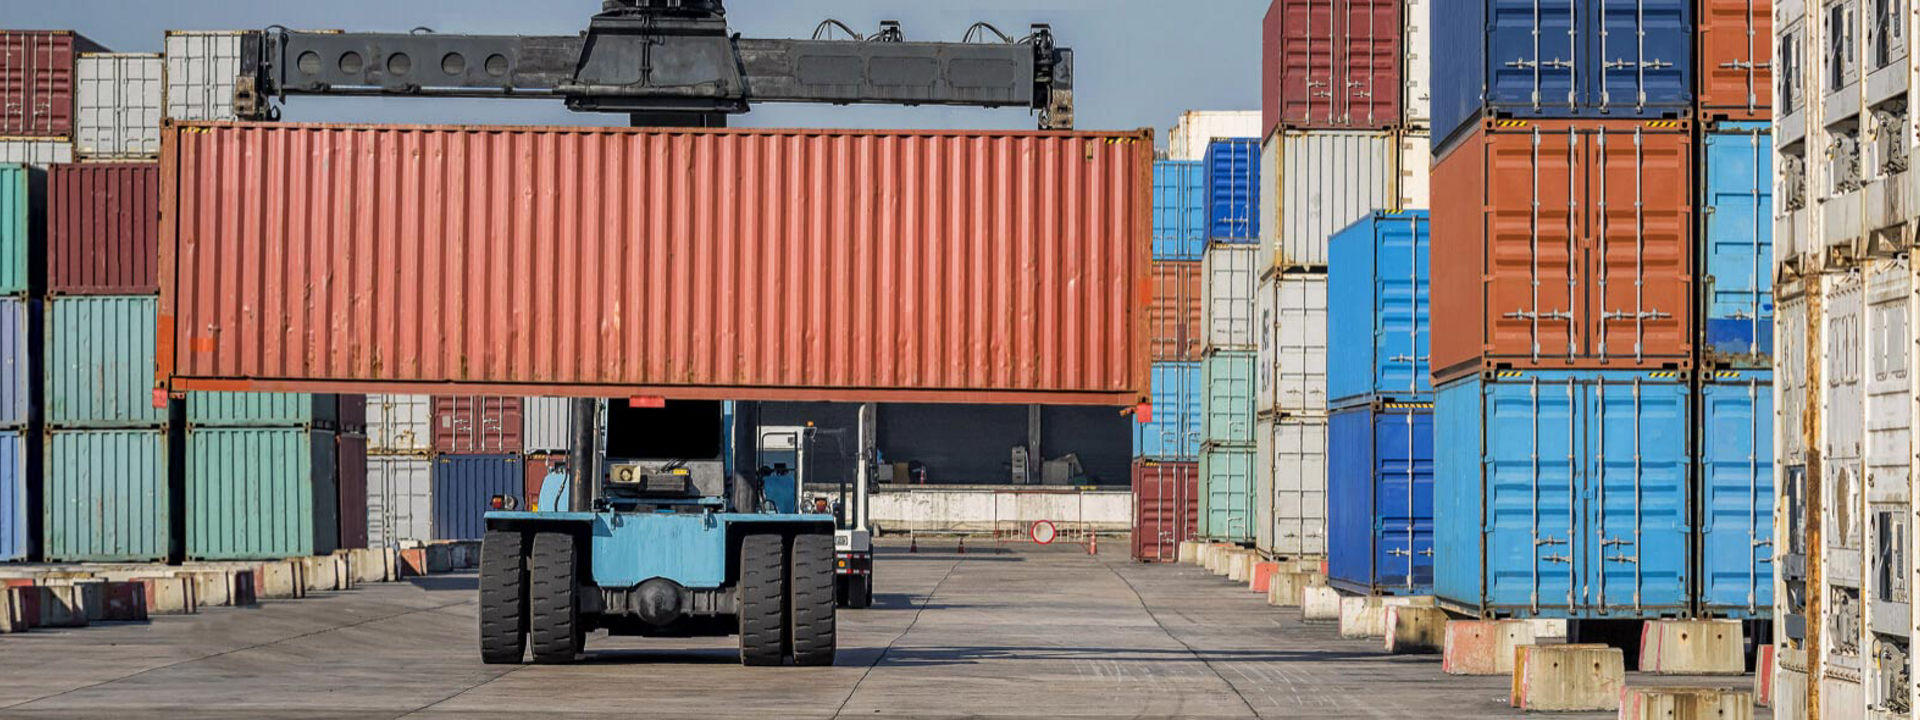 Ein Gabelstapler, der mit Bridgestone Geländereifen ausgestattet ist, bewegt Versandcontainer in einem großen Industriehafen